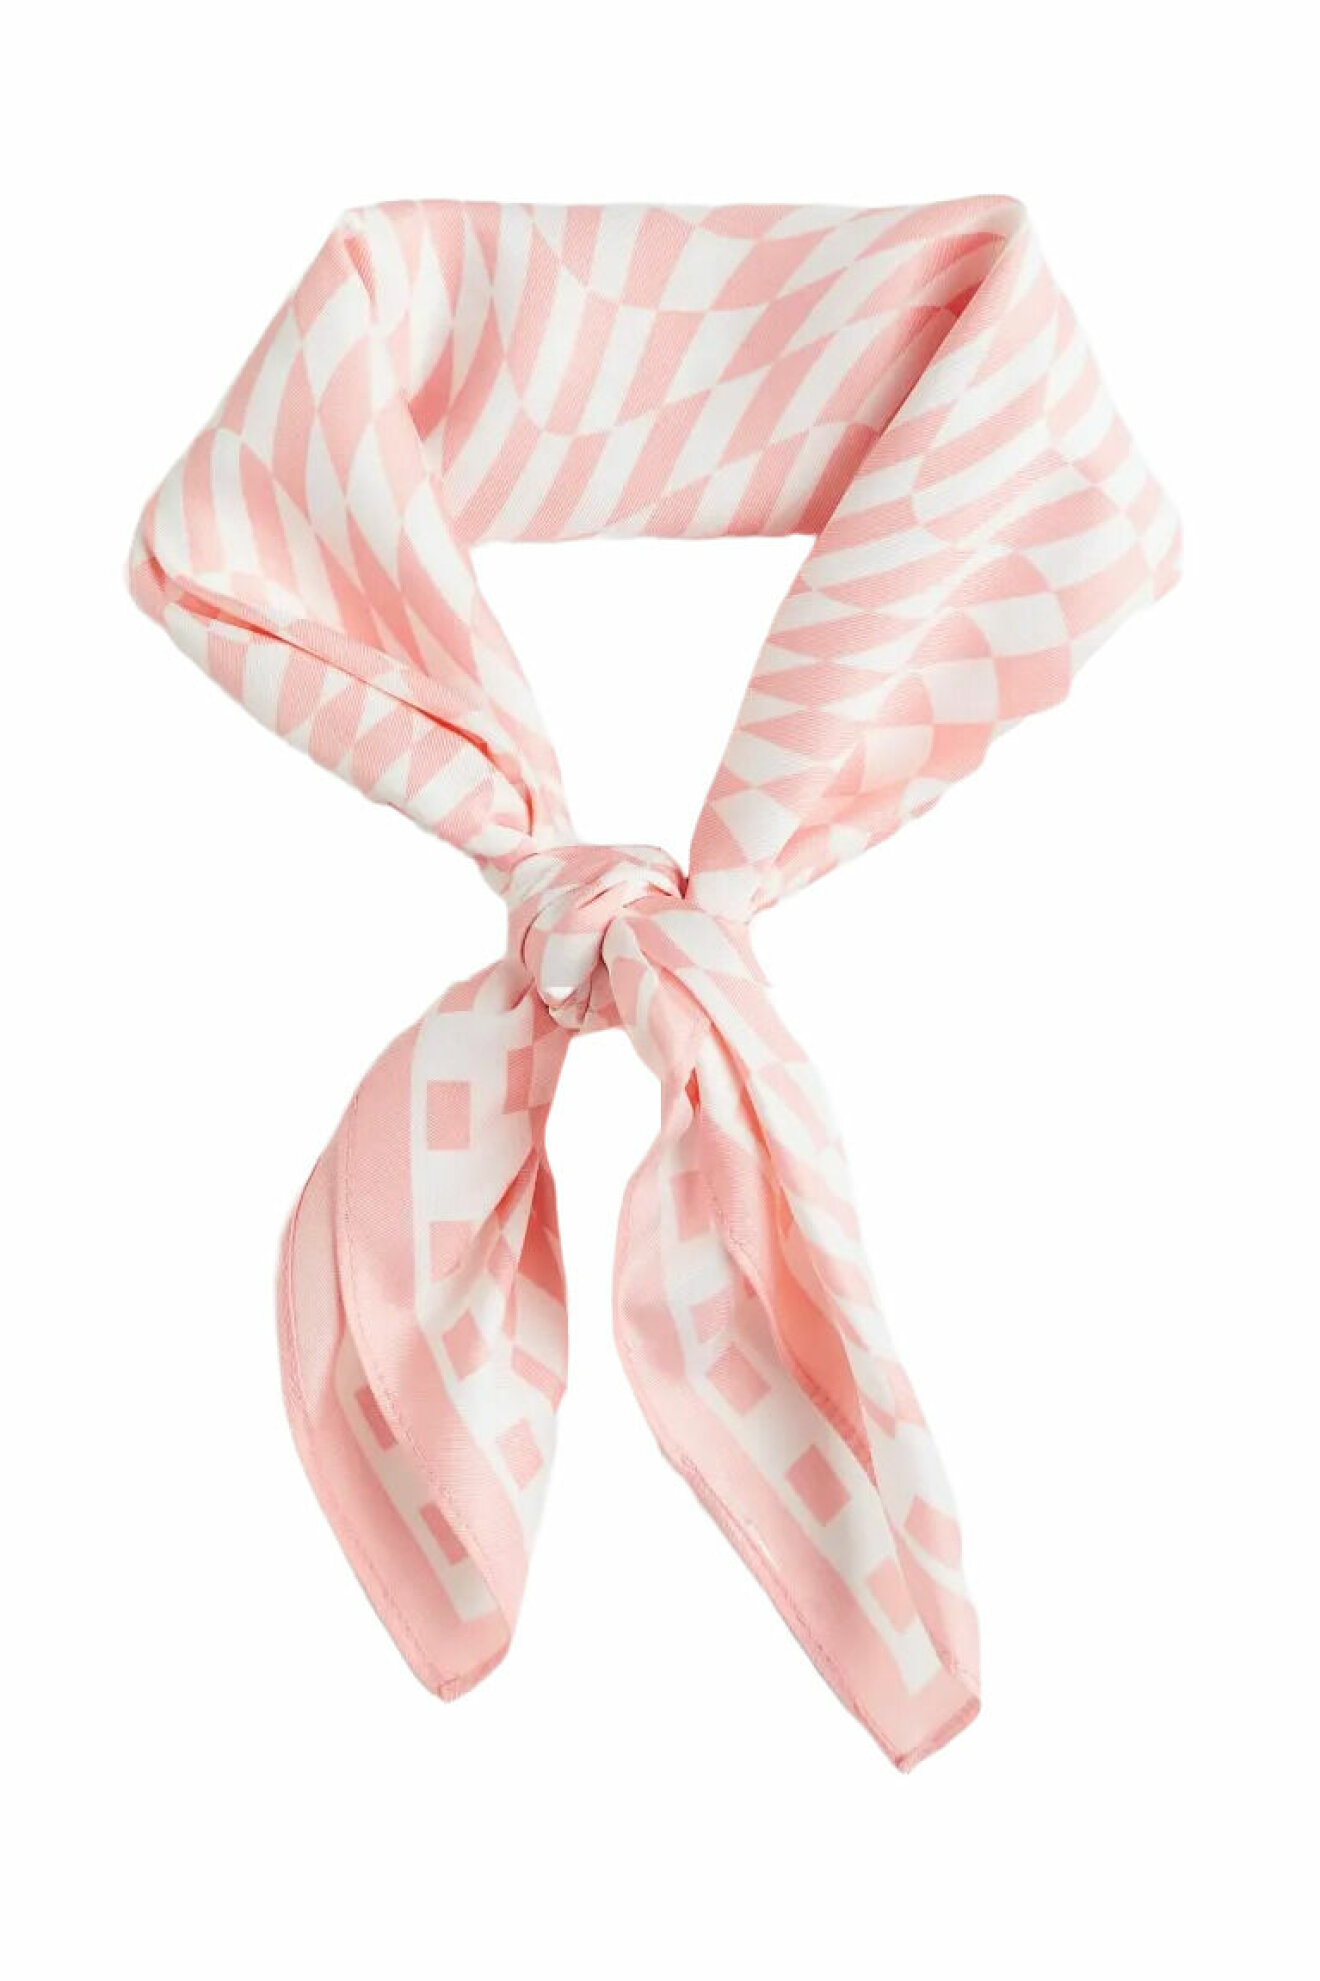 rosa satinscarf från hm